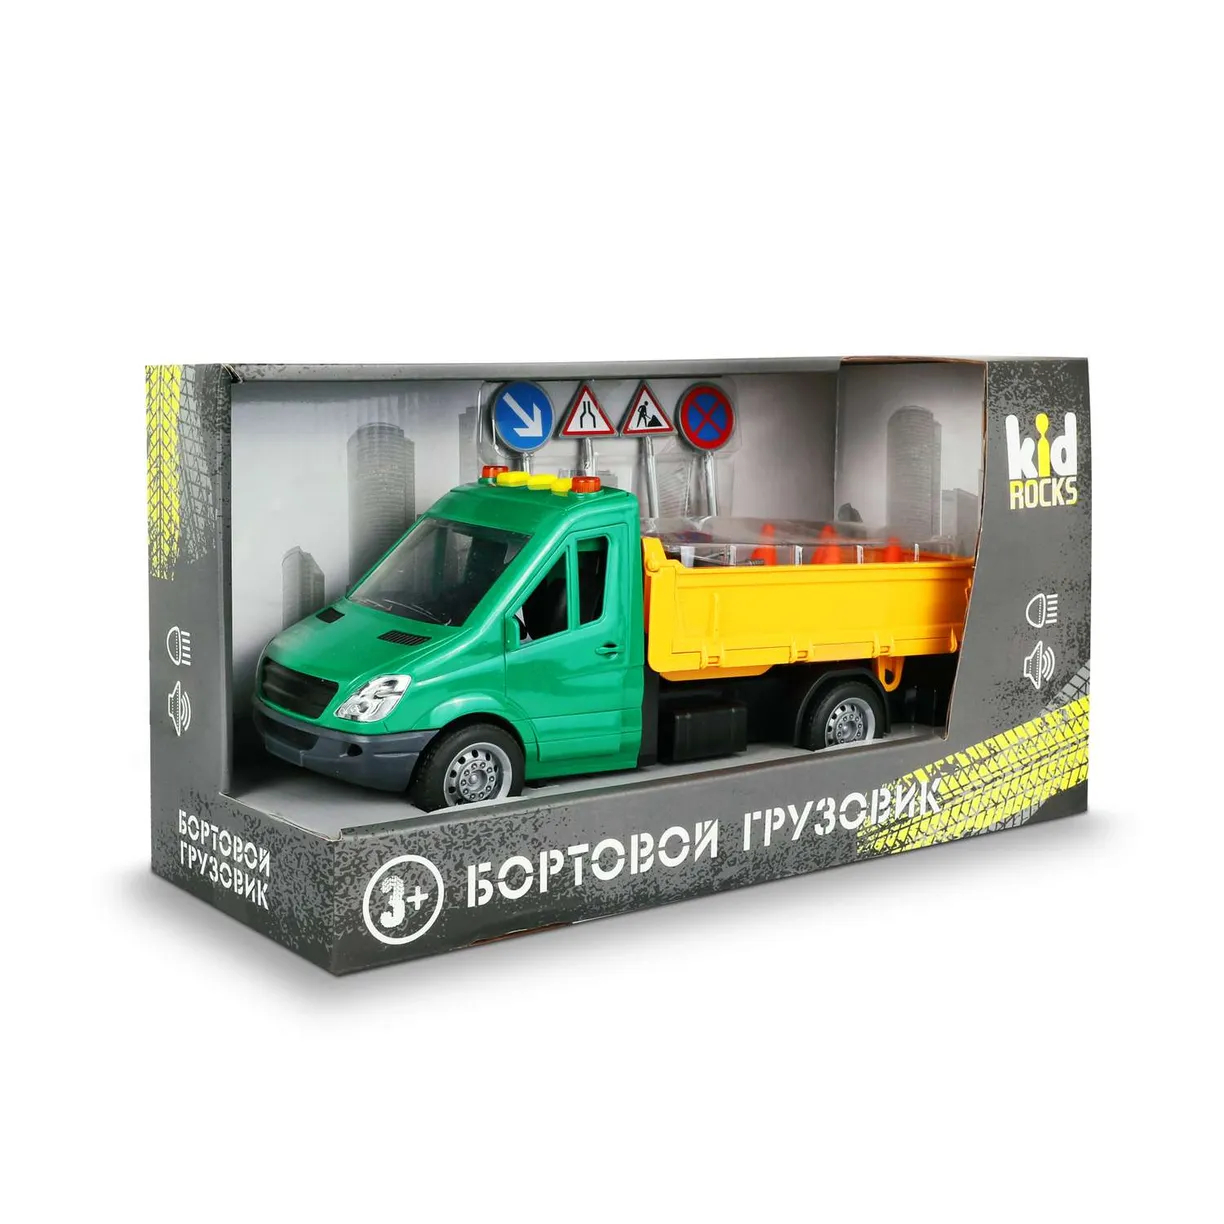 Модель Kid Rocks Бортовой грузовик 1:16 со звуком и светом робот gravitone световые и звуковые эффекты работает от батареек зелёный